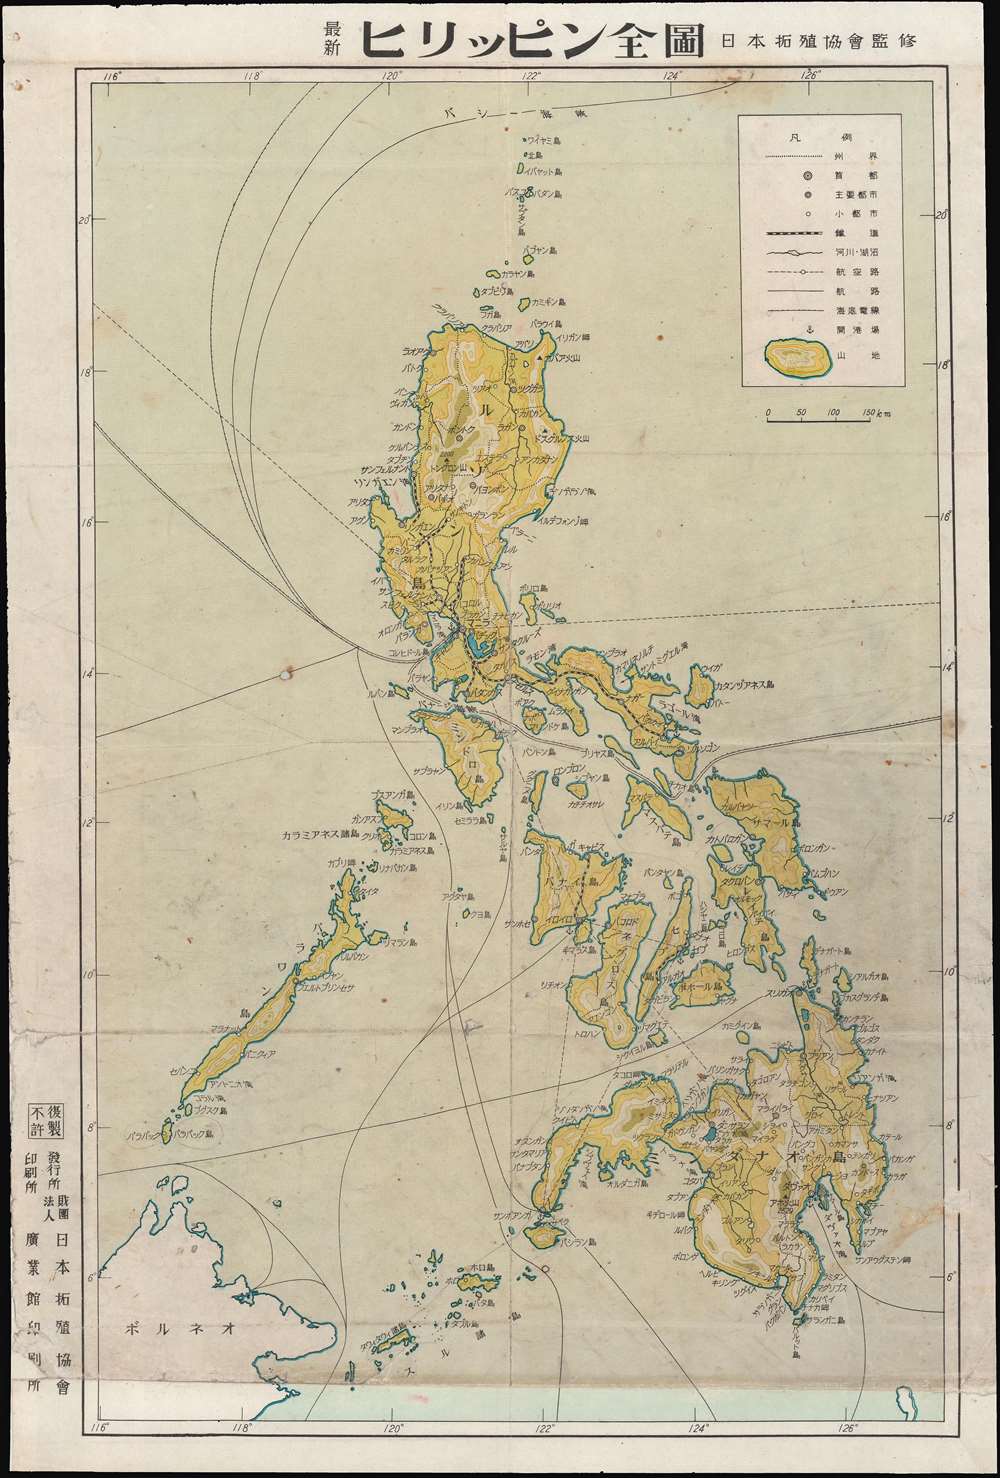 最新ヒリｼピン全圖 / [Latest Complete Map of the Philippines]. - Main View